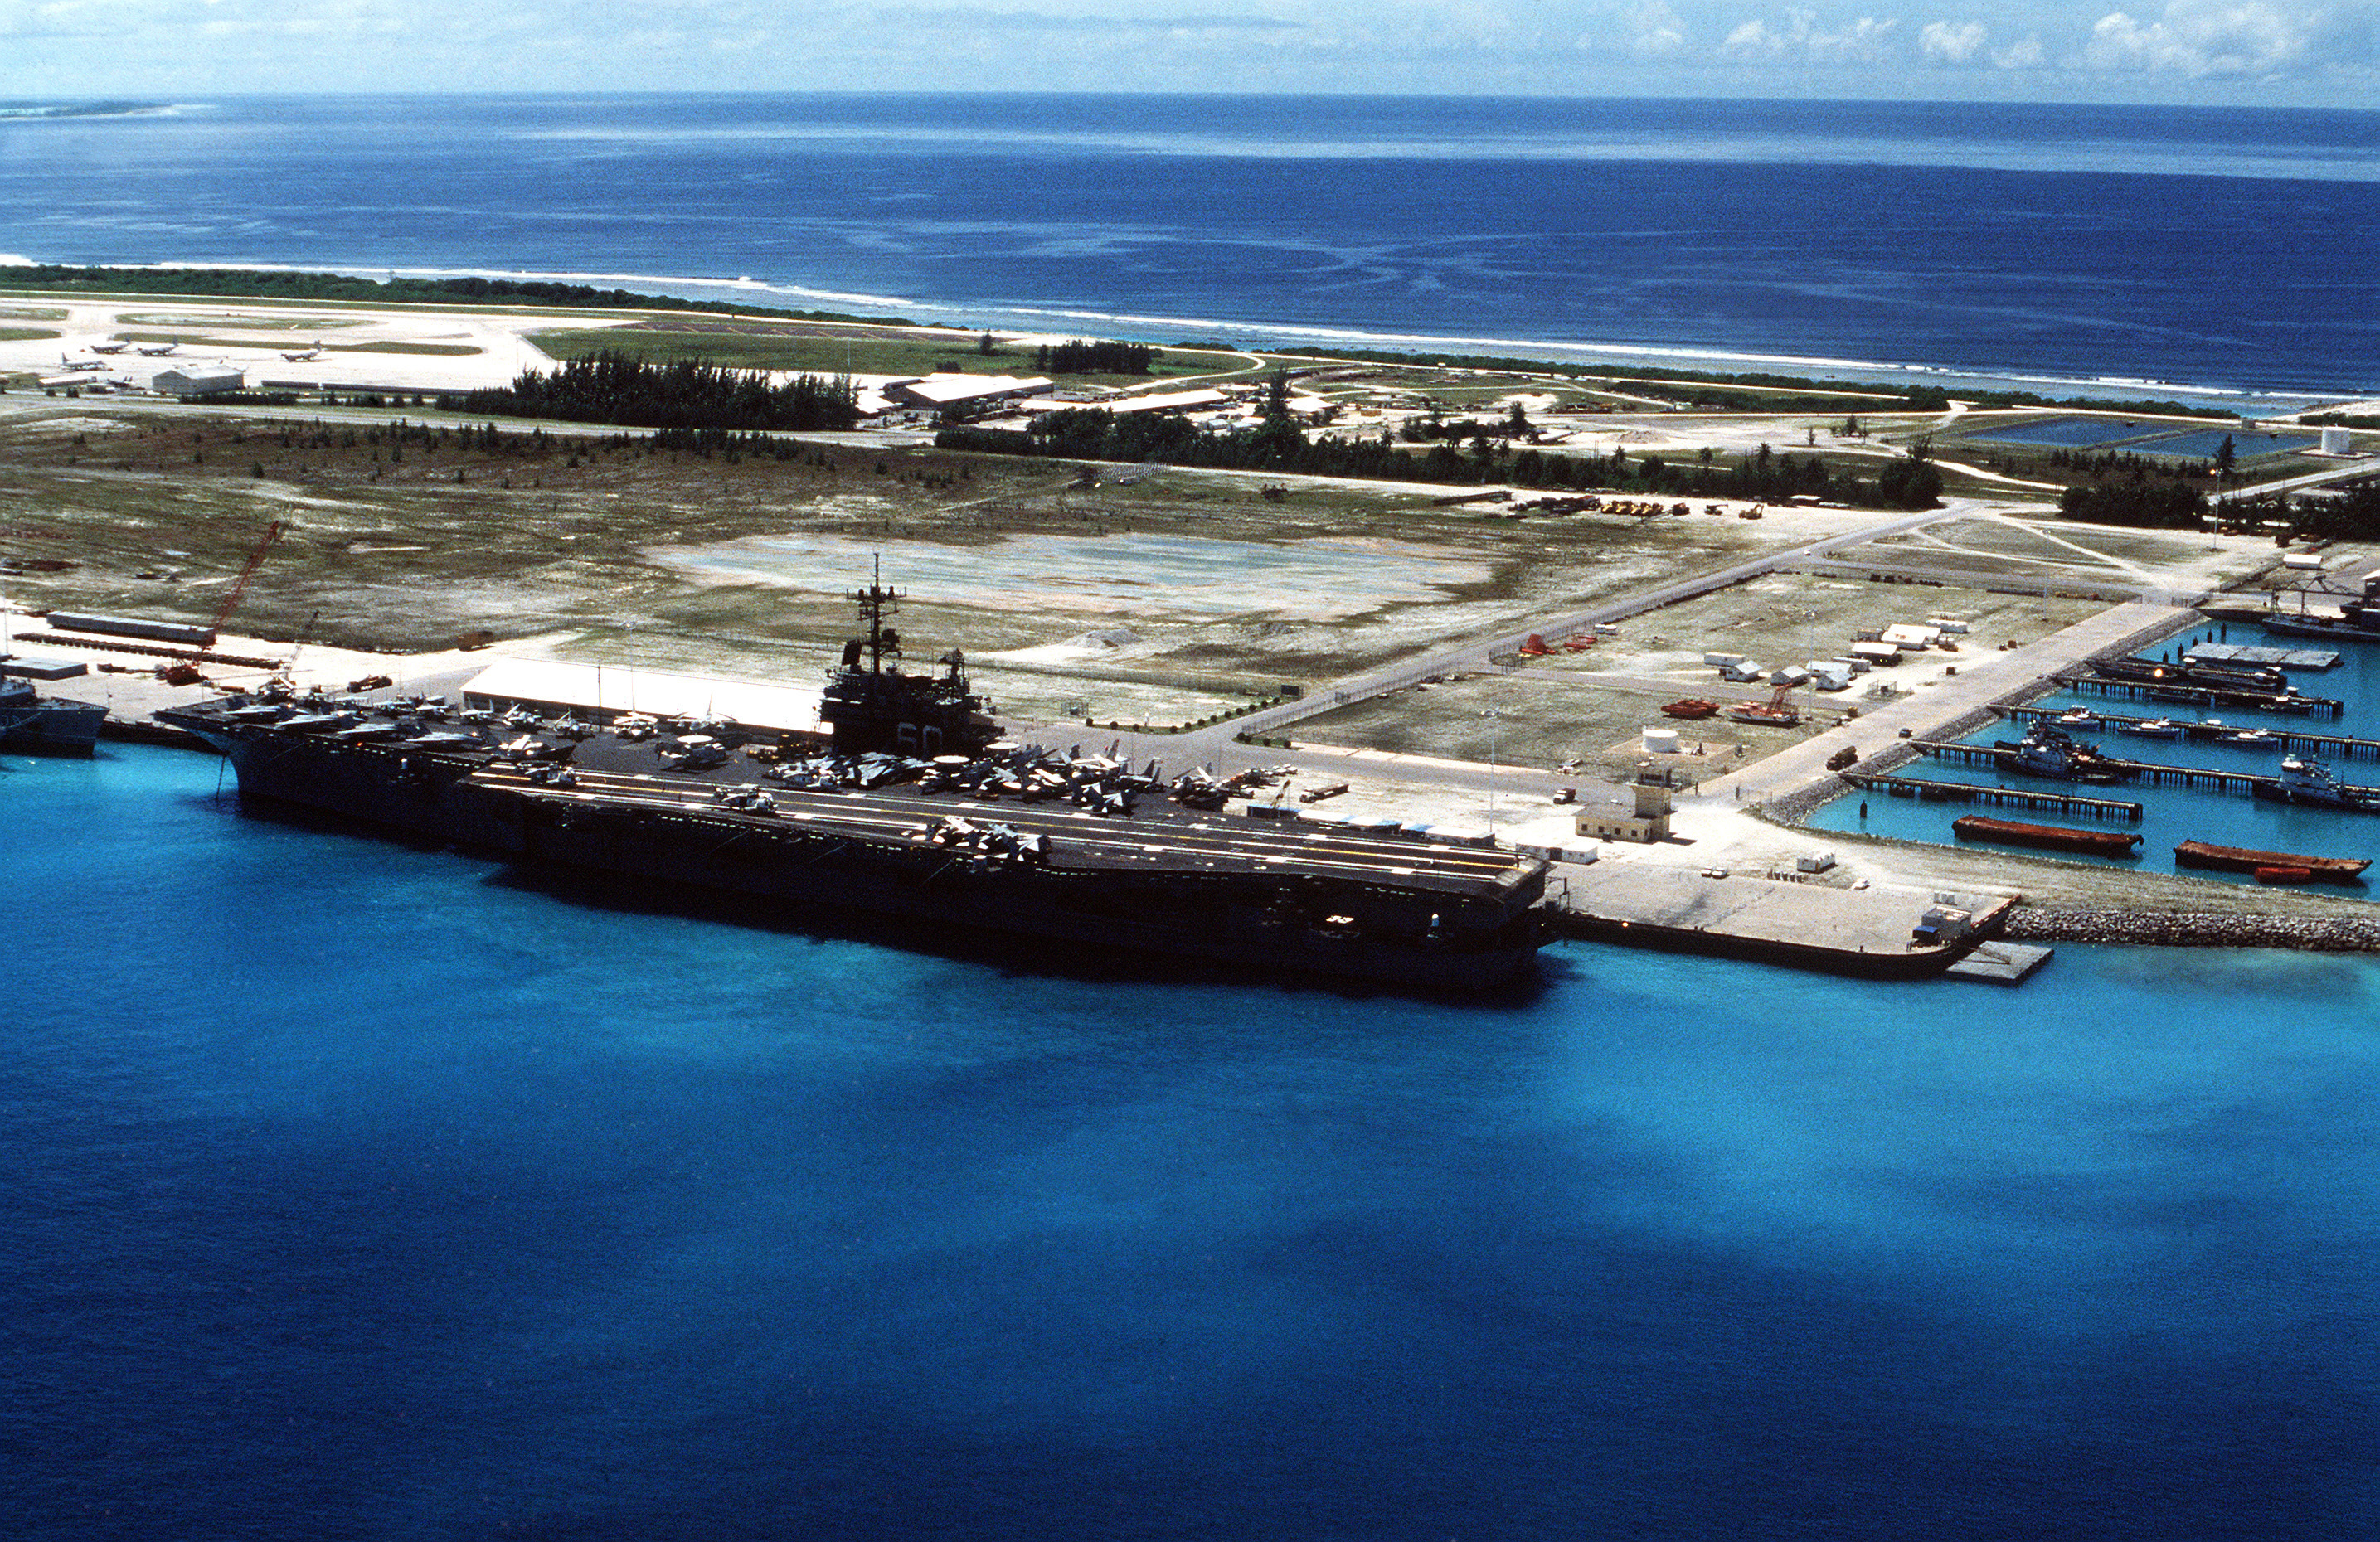 USS_Saratoga_CV-60_at_Diego_Garcia_in_1987.jpeg